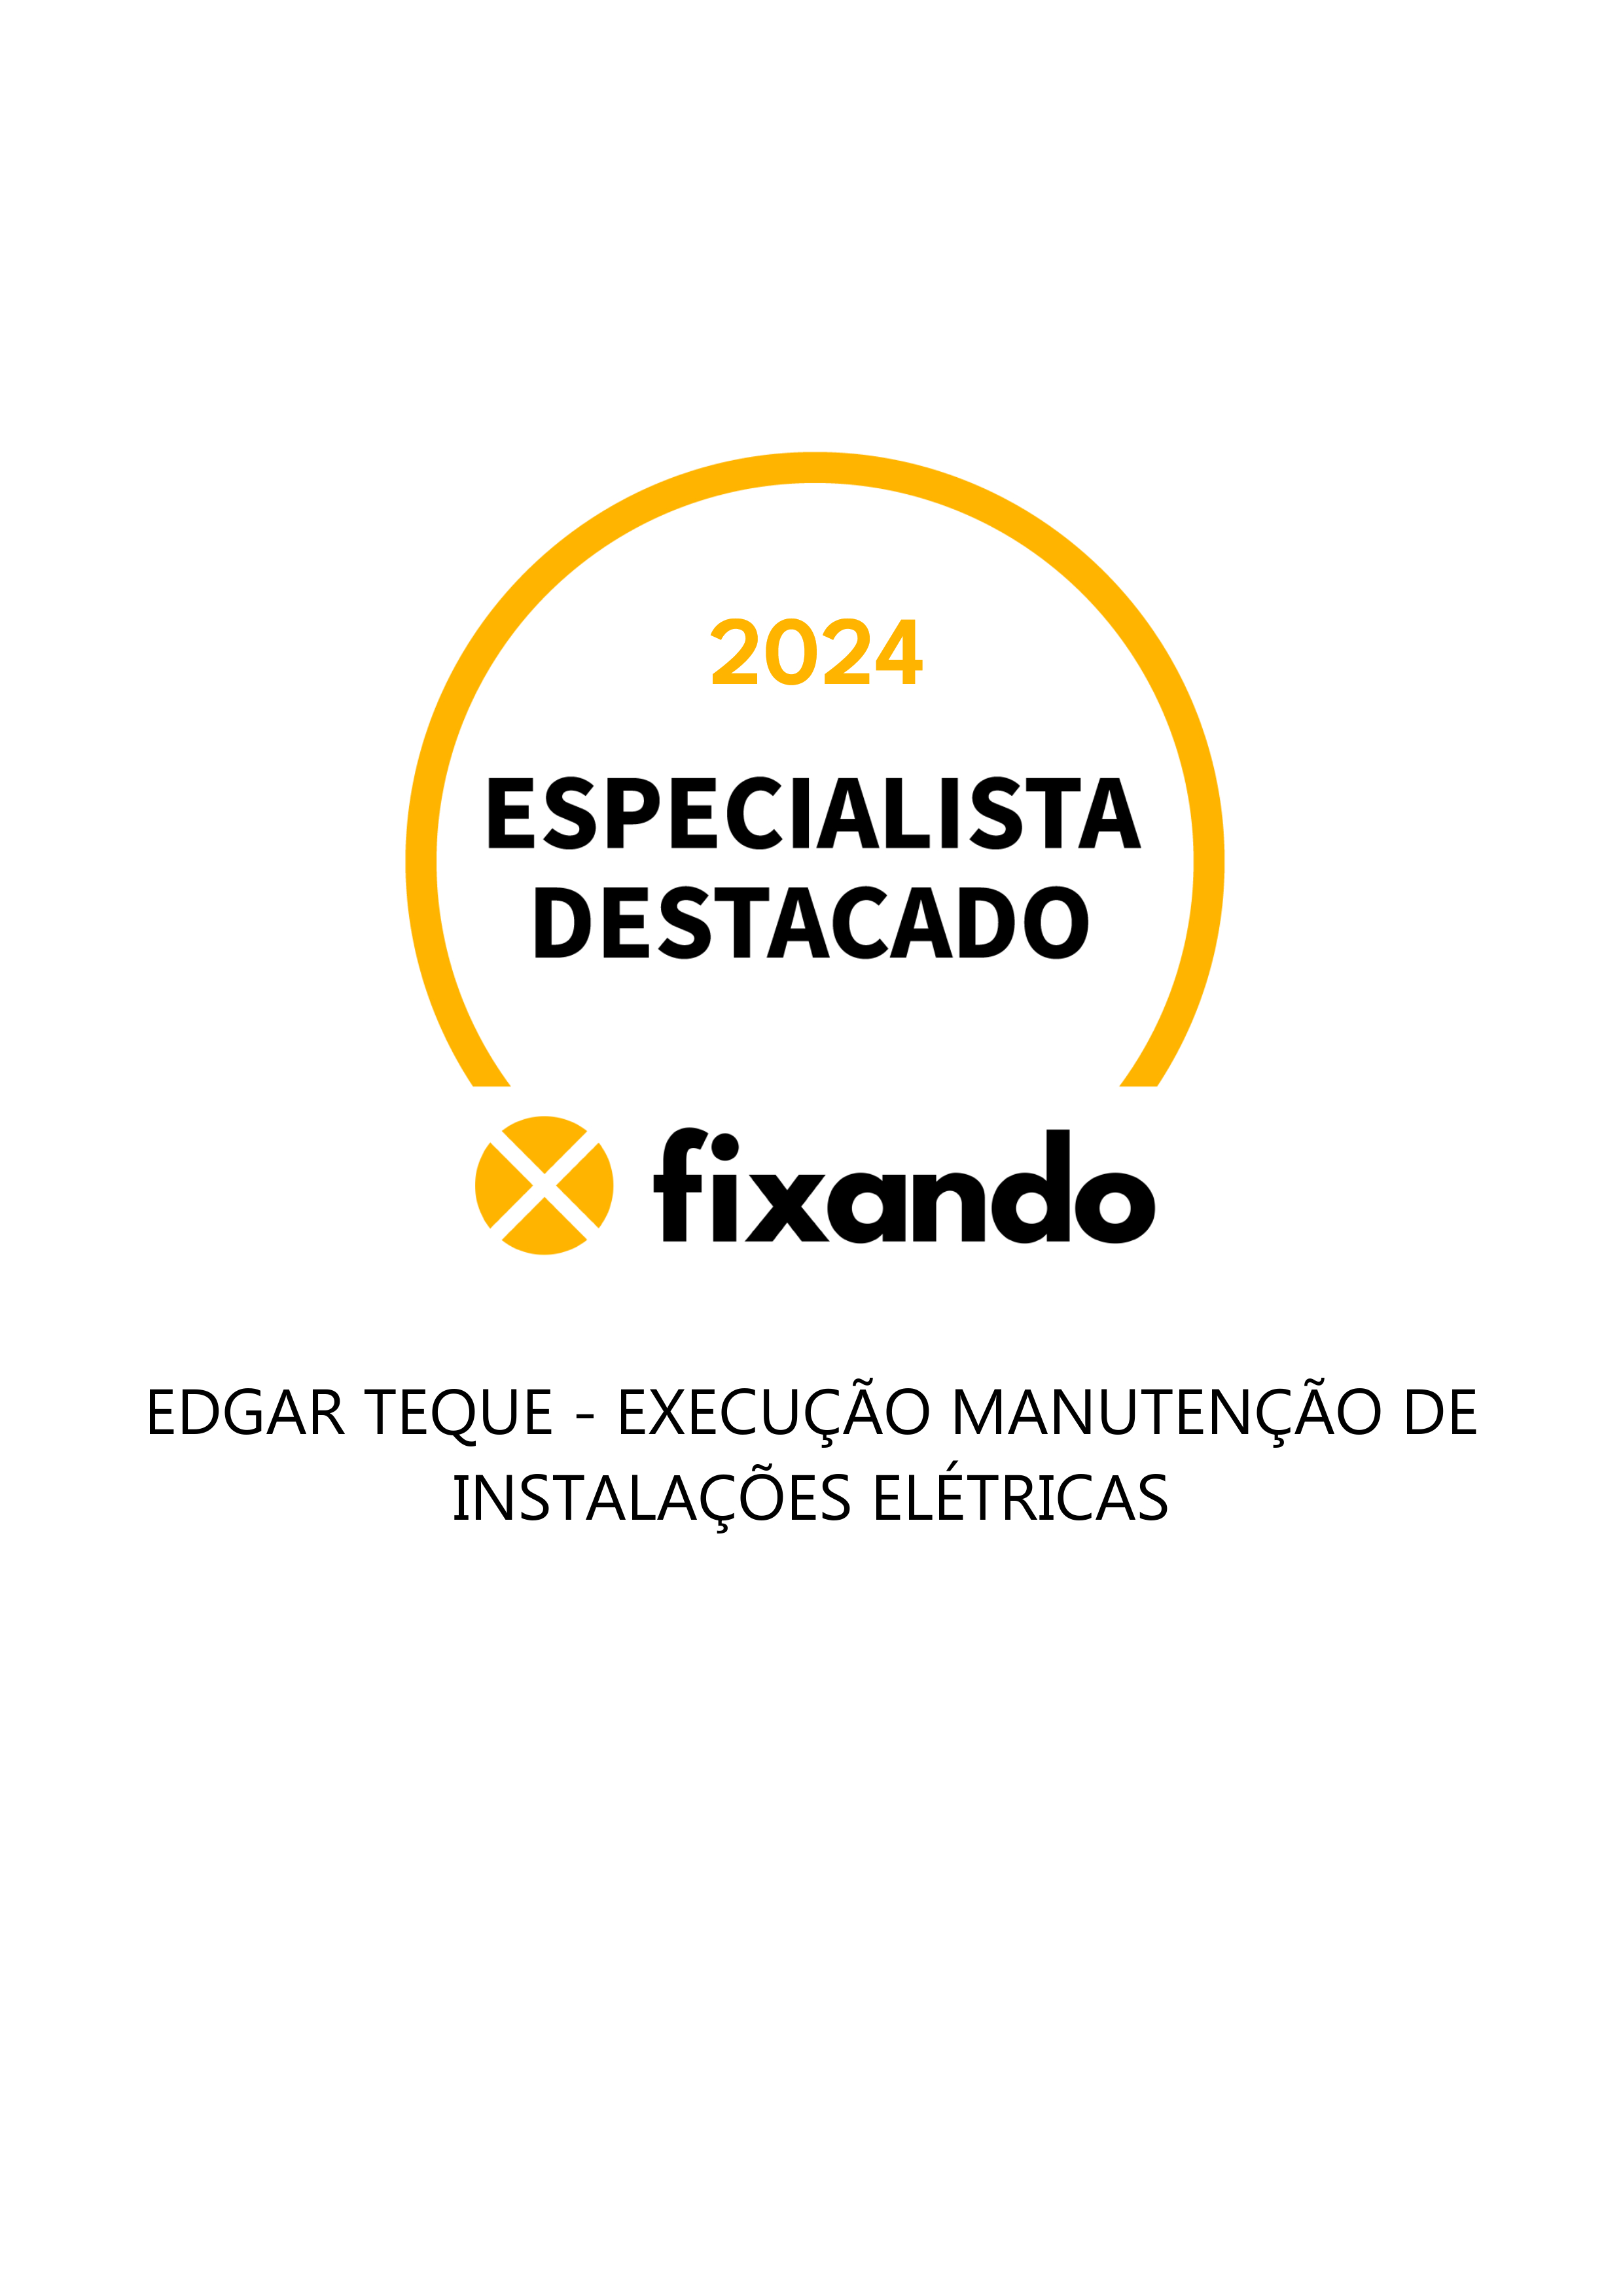 Edgar Teque - Execução Manutenção de Instalações Elétricas - Amadora - Instalação ou Substituição de Sistemas de Aquecimento